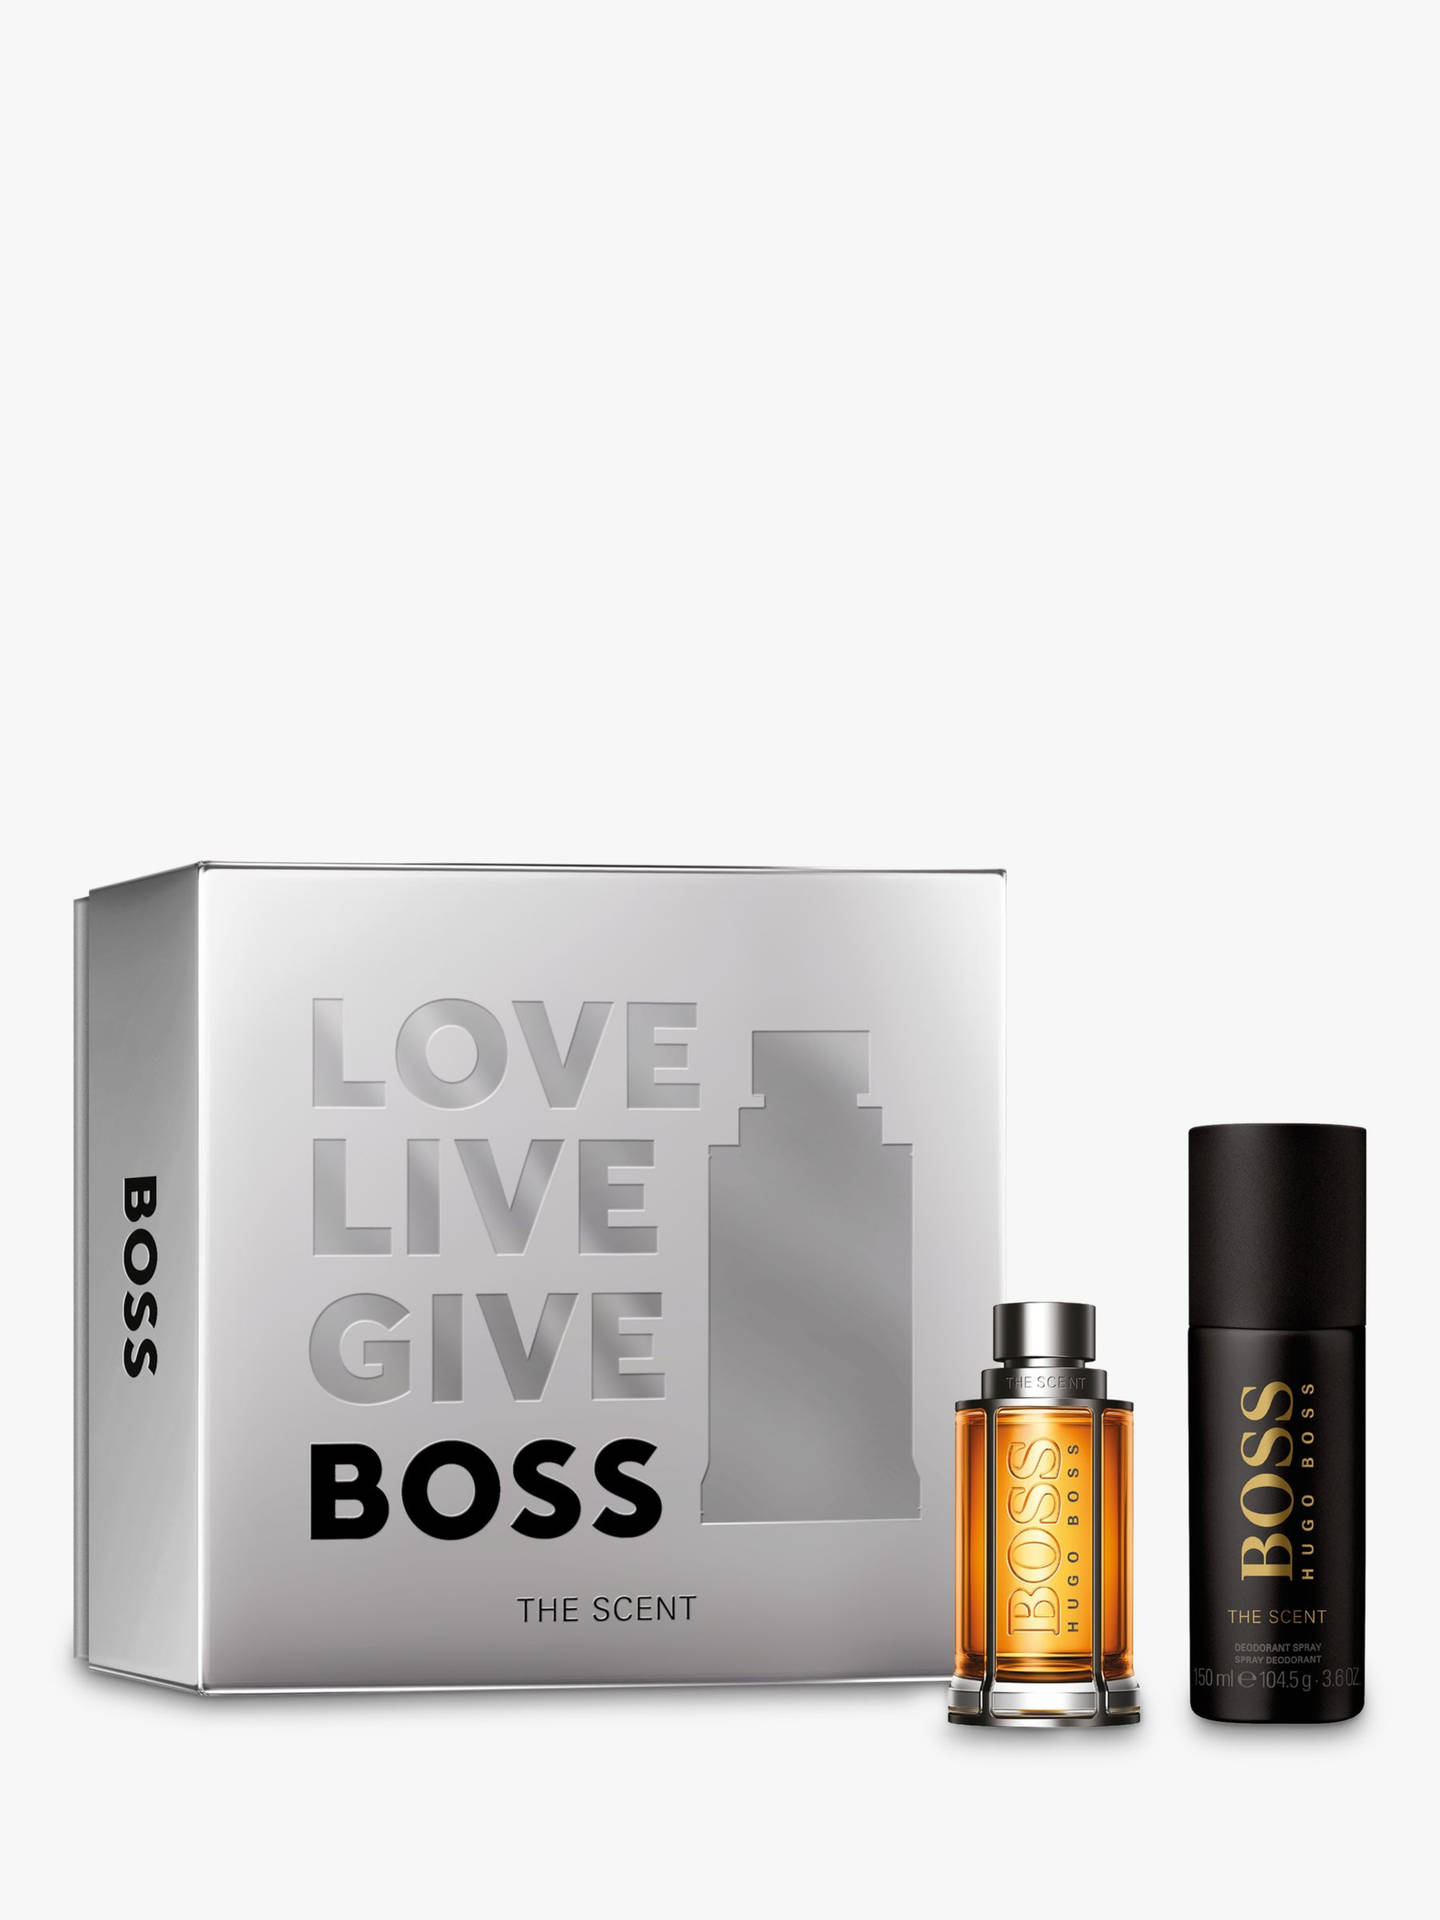 Hugo Boss Black And Gold Perfumes Wallpaper